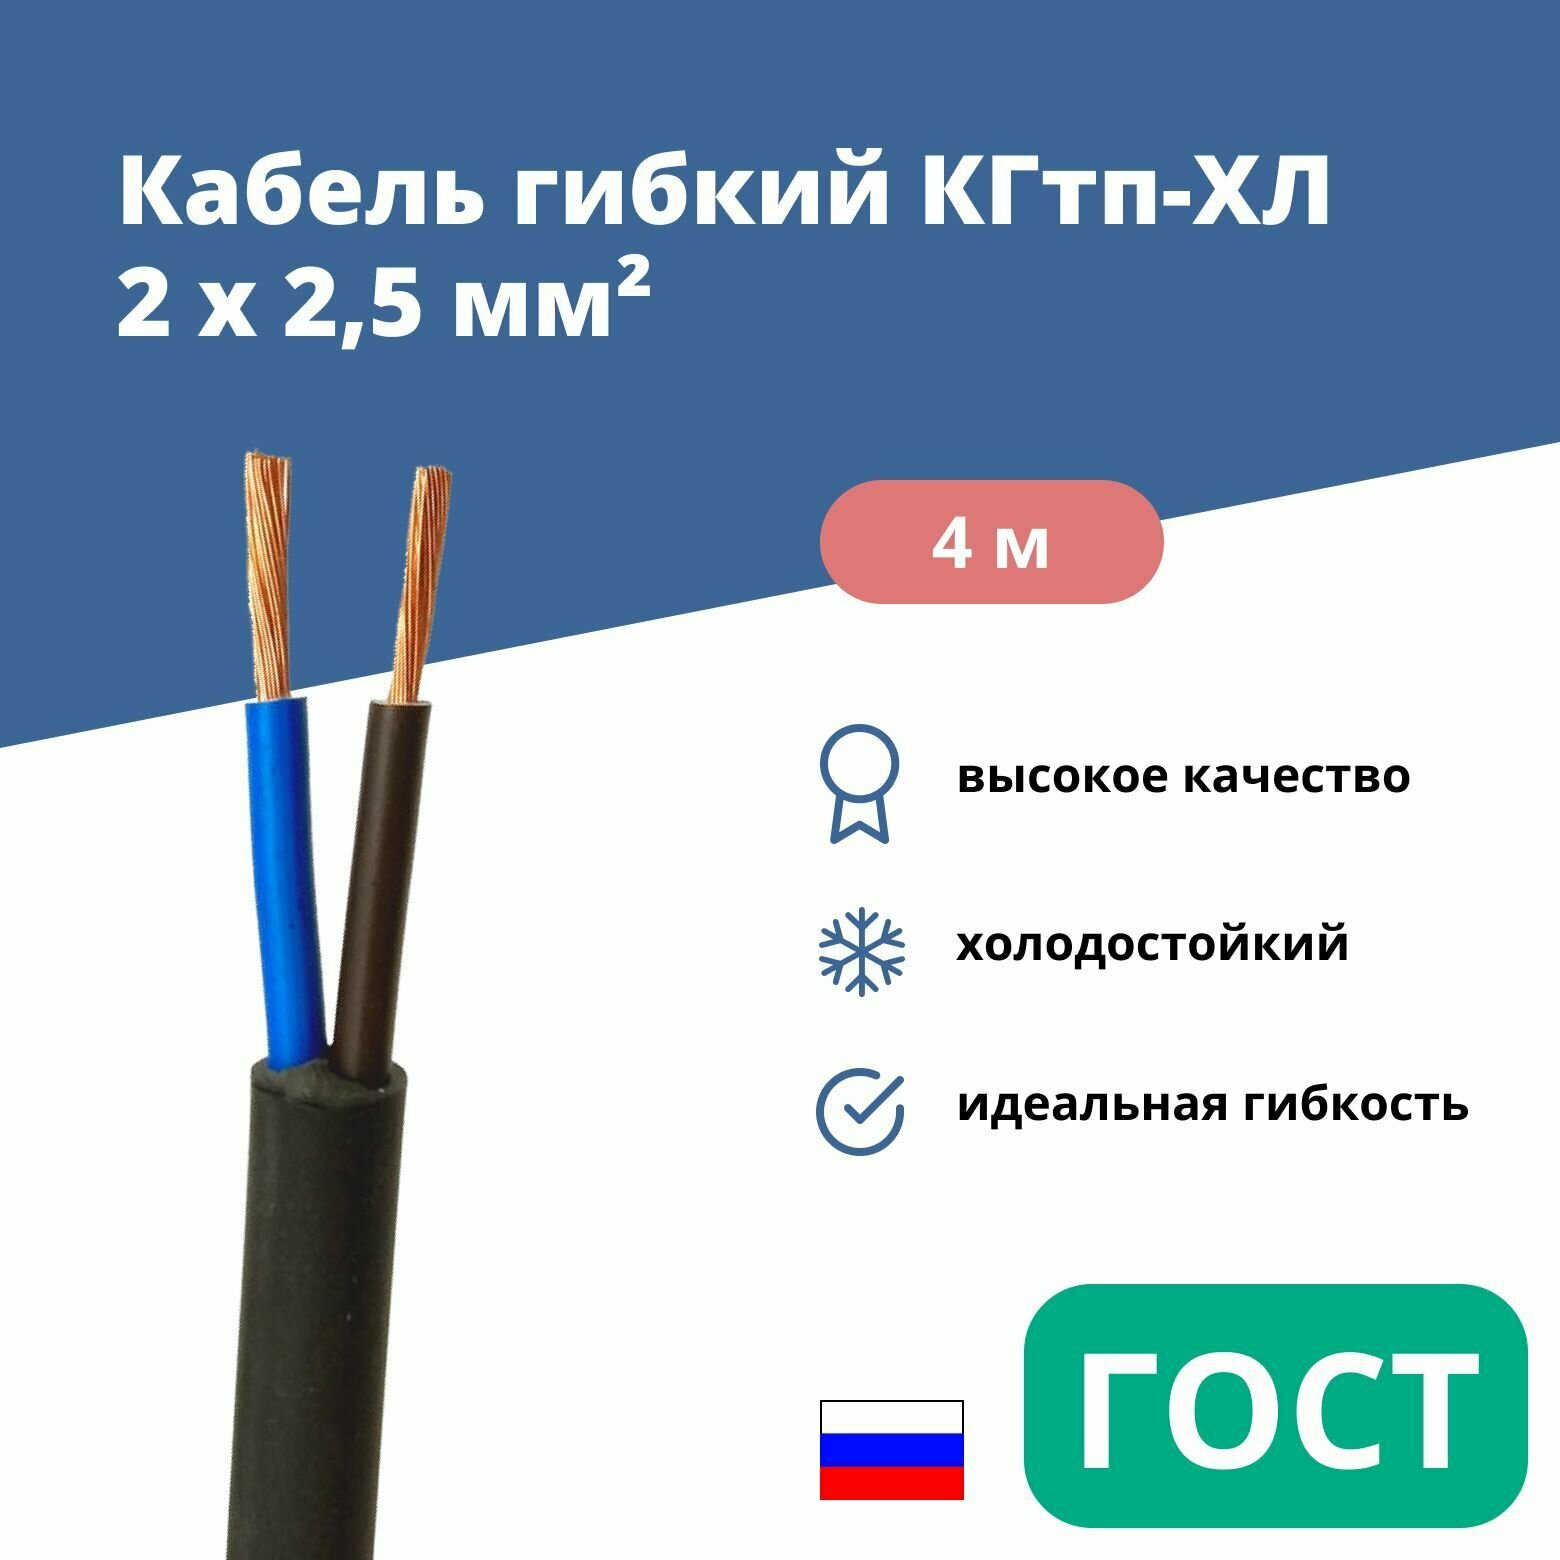 Силовой сварочный кабель гибкий кгтп-хл 2х2,5 уп. 4м.